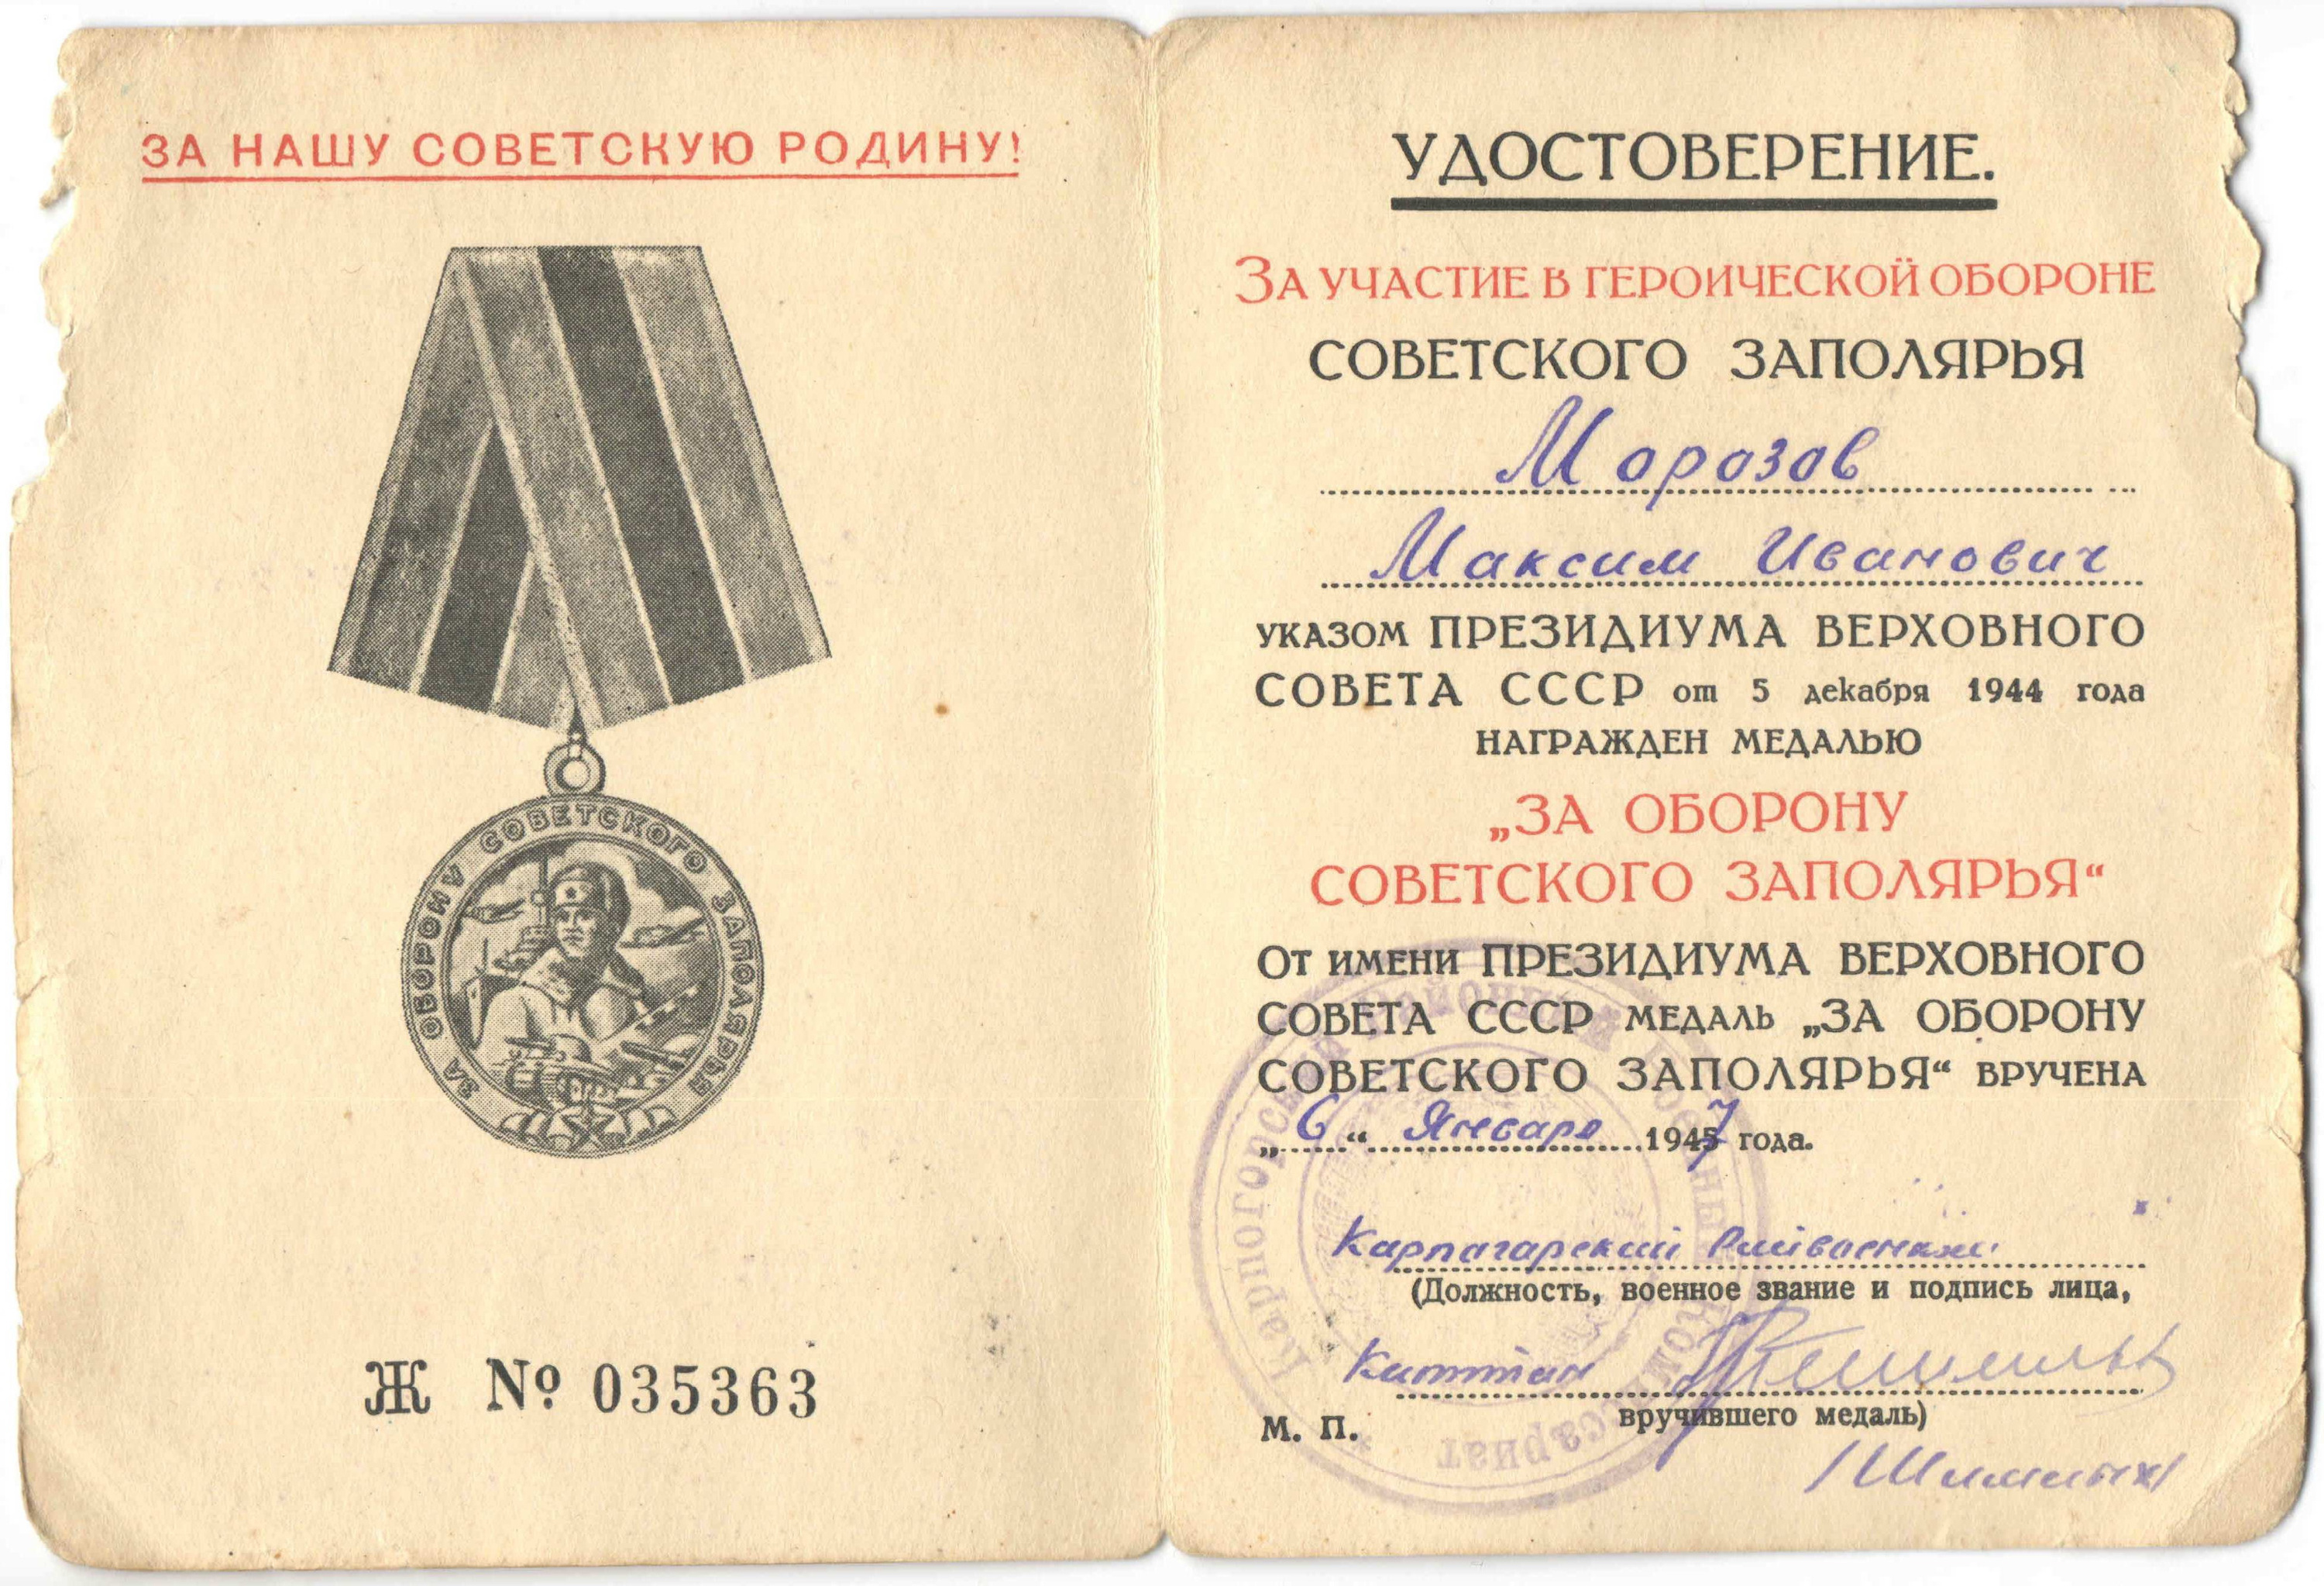 Помимо этой медали Максим Иванович также награжден орденом Красной звезды и медалью «За победу над Германией»